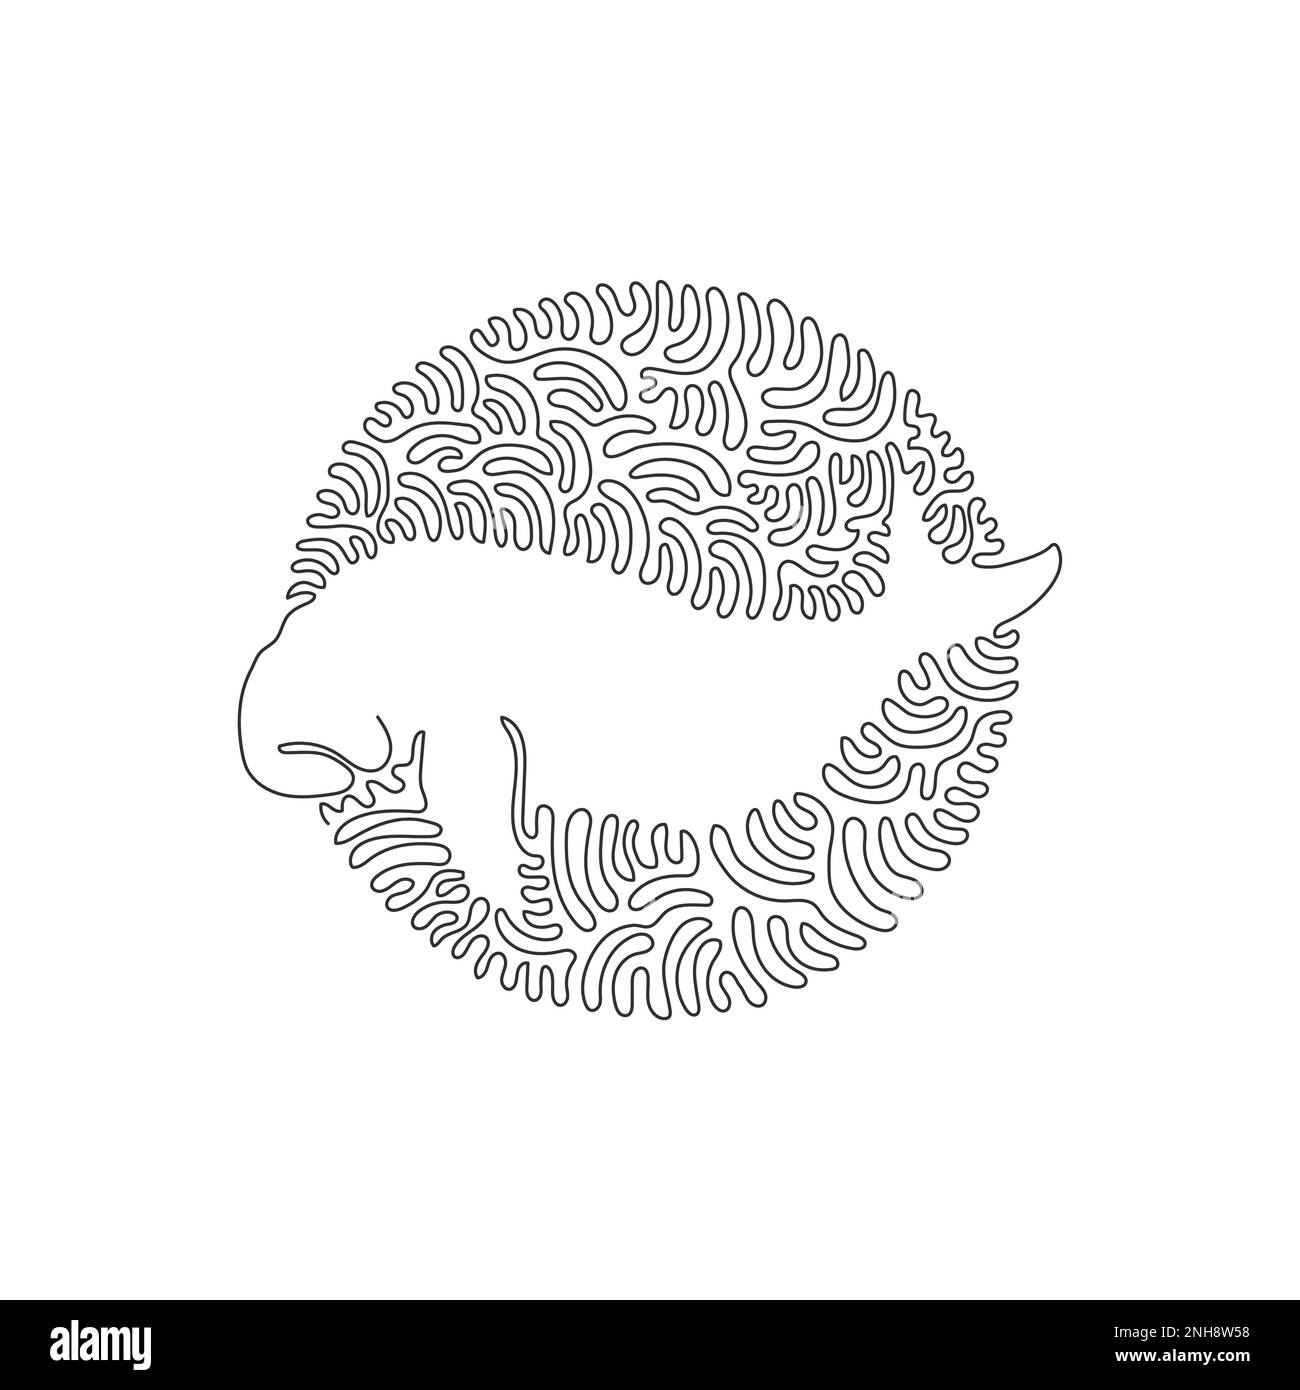 Eine einzige Strichzeichnung mit süßer Dugong-Abstrakt-Kunst. Durchgehende Linienzeichnung als Konstruktionsvektor Darstellung von Dugongs, die anfällig für das Aussterben sind Stock Vektor